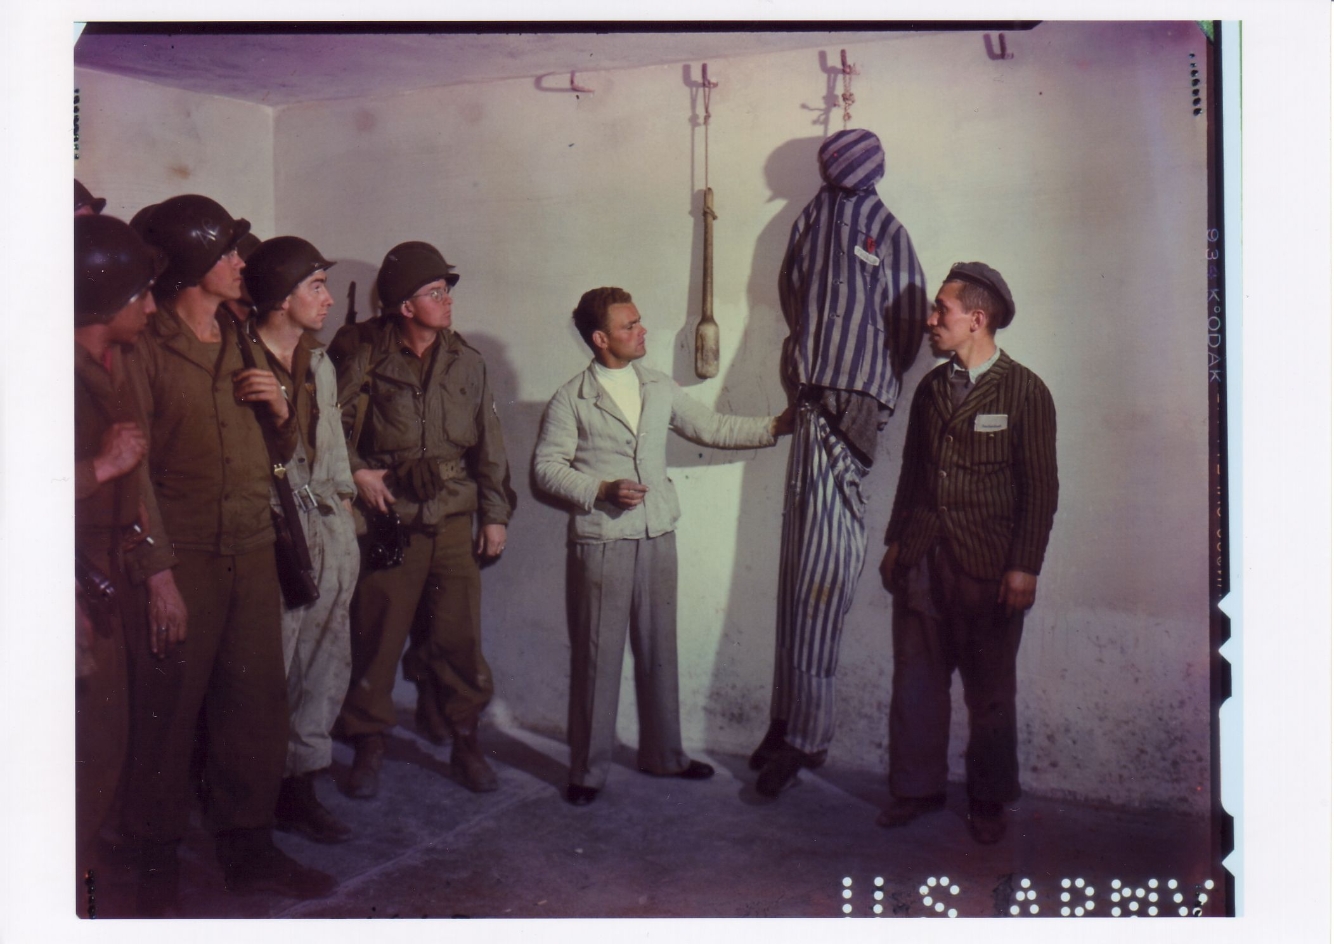 Links steht eine Gruppe Amerikanischer Soldaten die bei der Demonstartion zusehen. In der Mitte des Bildes steht ein ehemaliger Häftling vor an einem Wandhaken aufgehängeten Puppe in Häftlingskleidung und macht eine erklärende Geste. Rechts steht ein weiterer ehemaliger Häftling und spricht zu den Us.Soldaten.